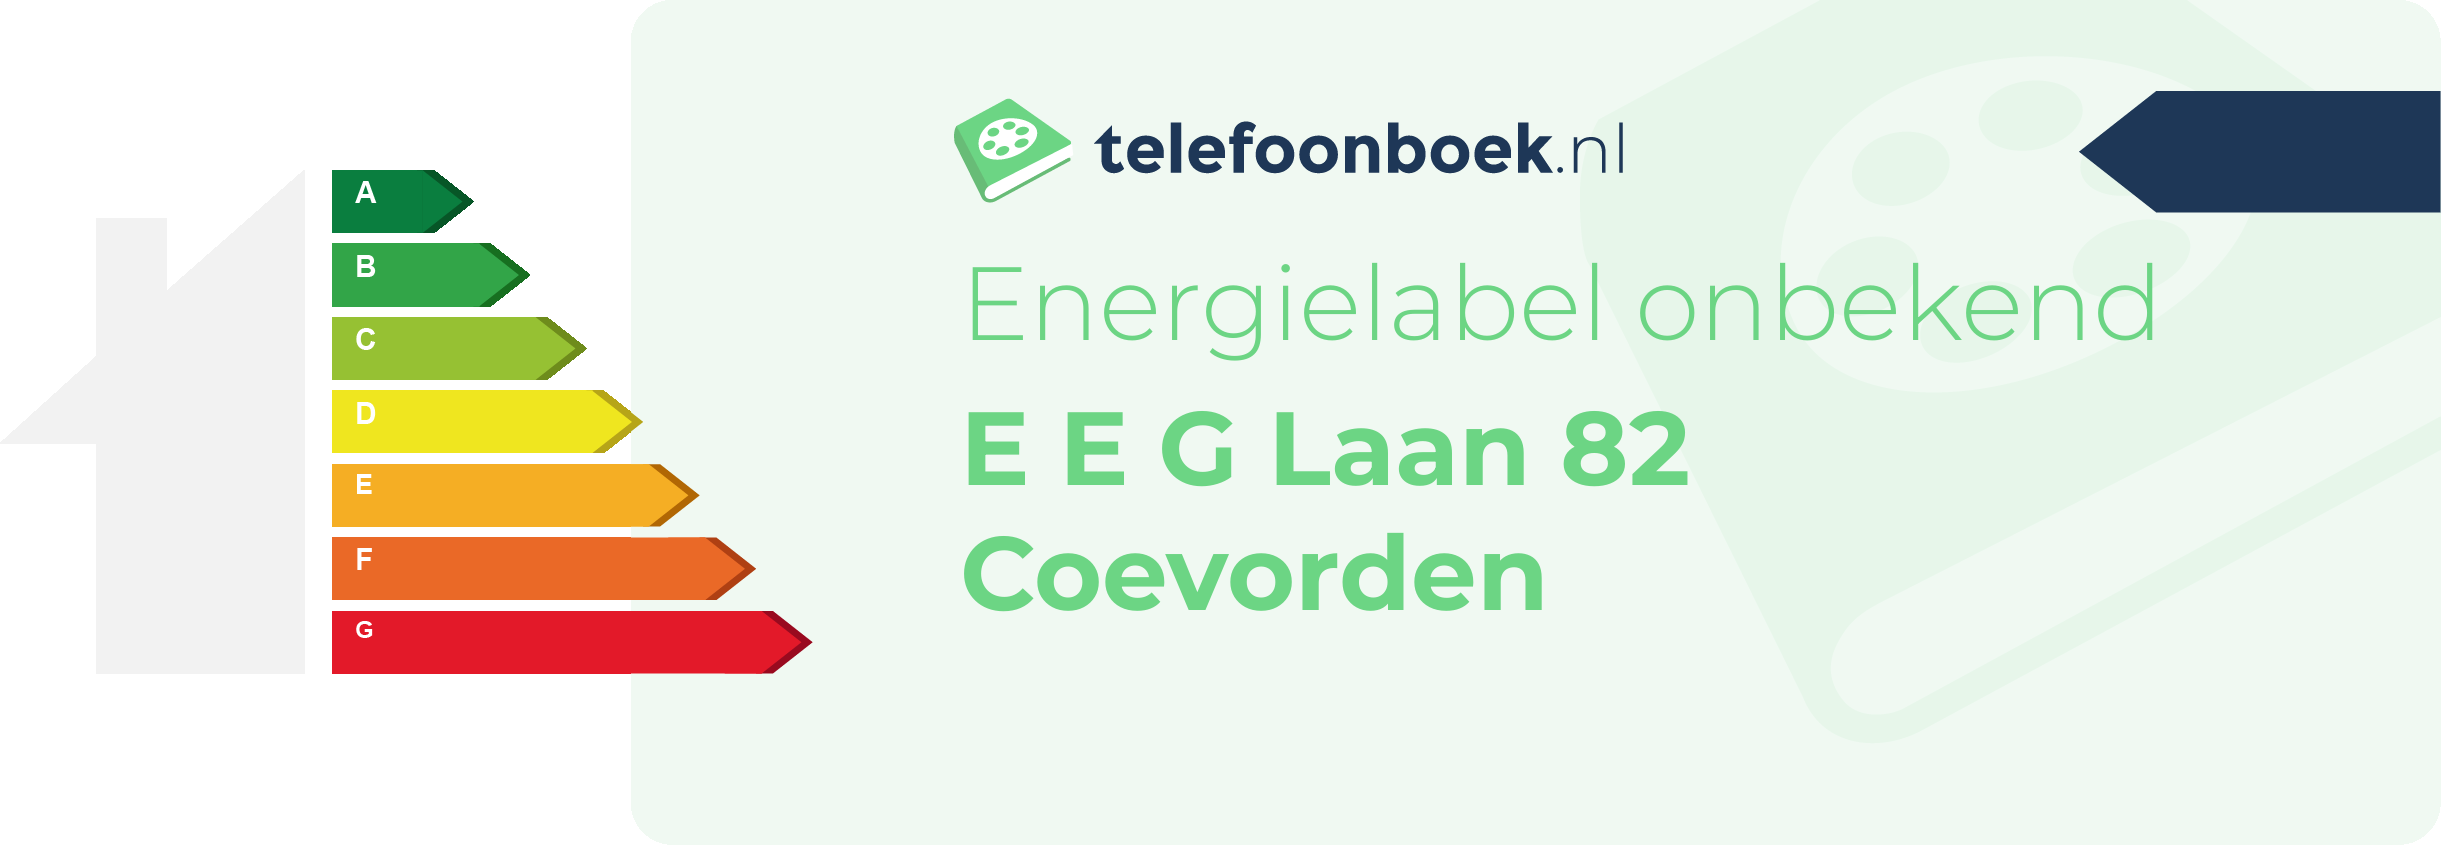 Energielabel E E G Laan 82 Coevorden